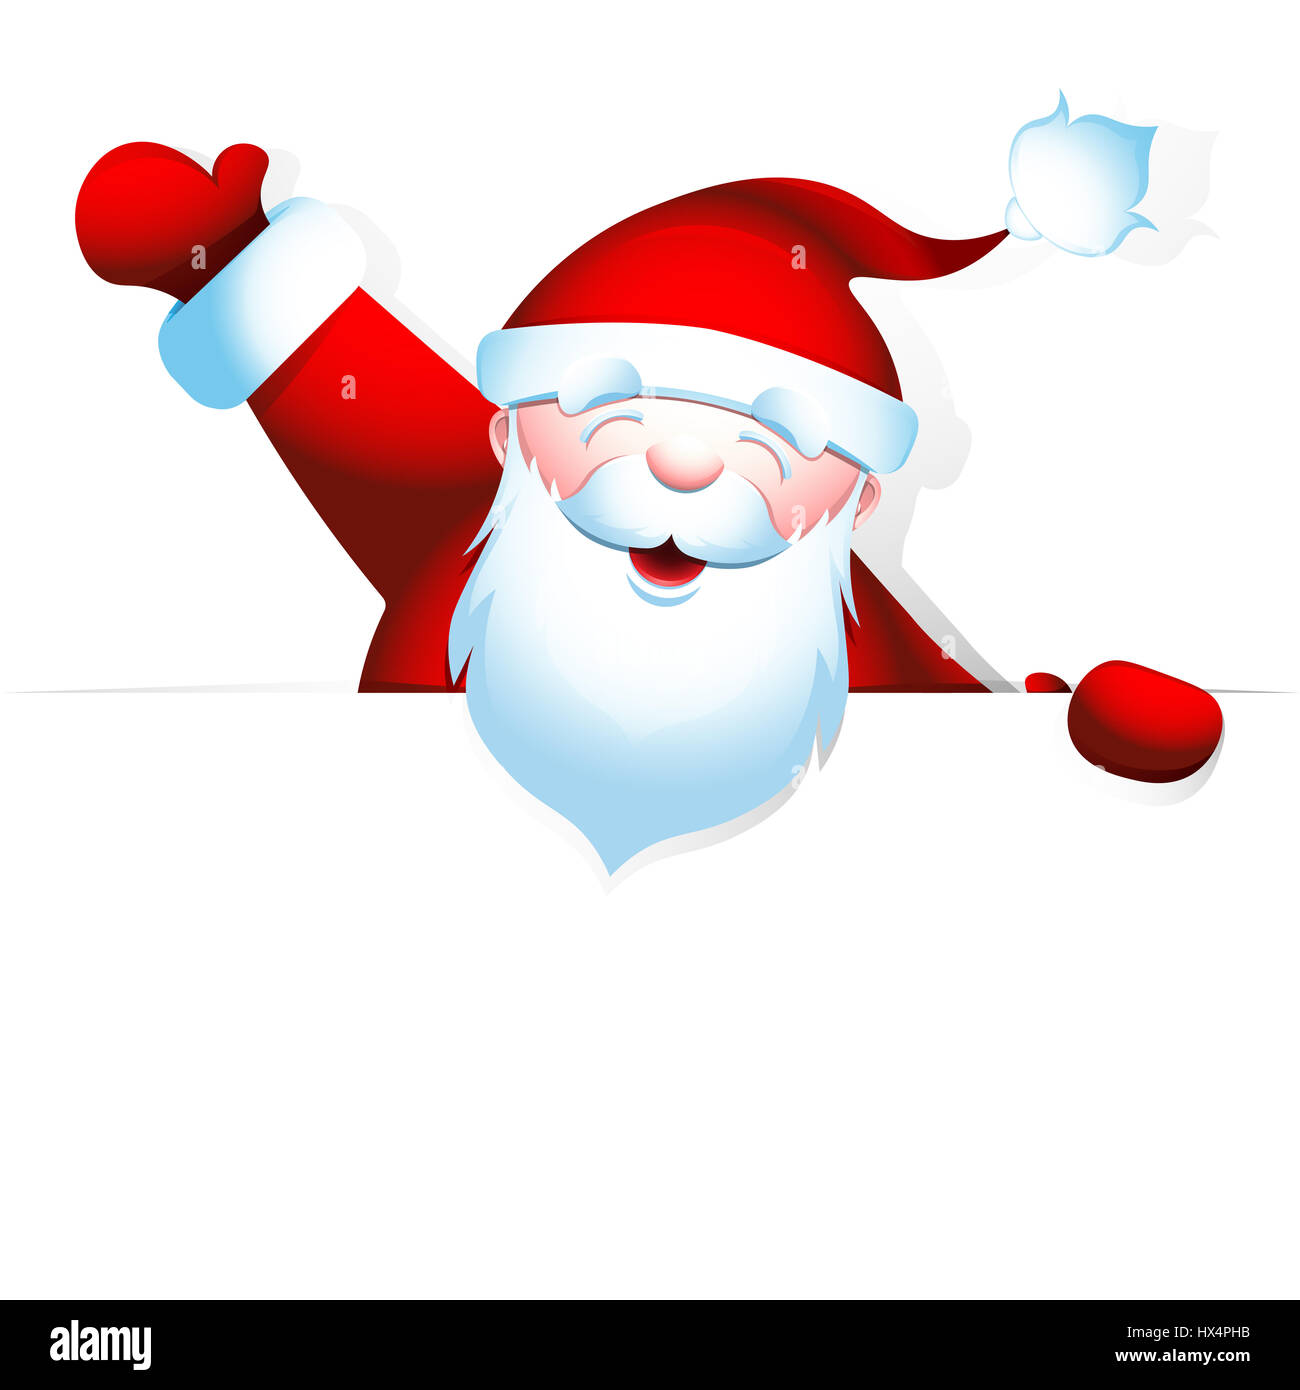 Cheerful Santa Claus leva la main jusqu'à l'accueil. Grand-père barbu est titulaire d'ouverture vierge avec de l'espace pour votre texte. Banque D'Images